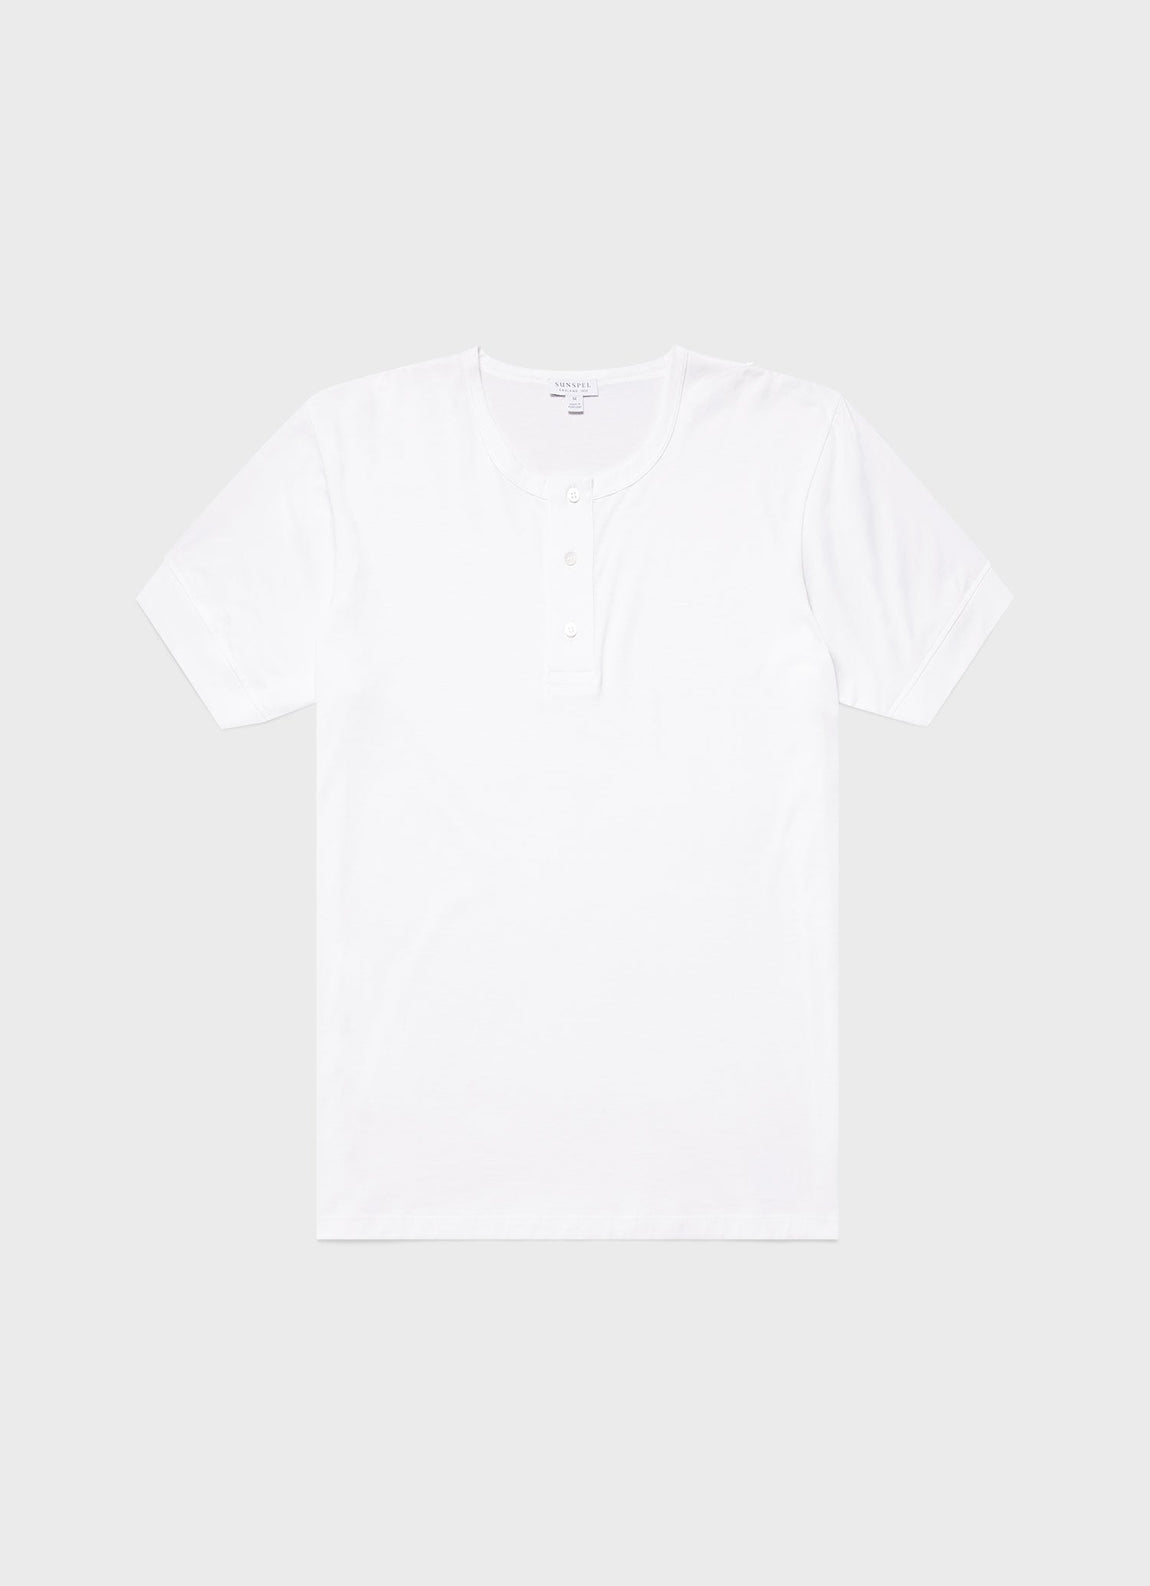 Men's Henley T-shirt in White